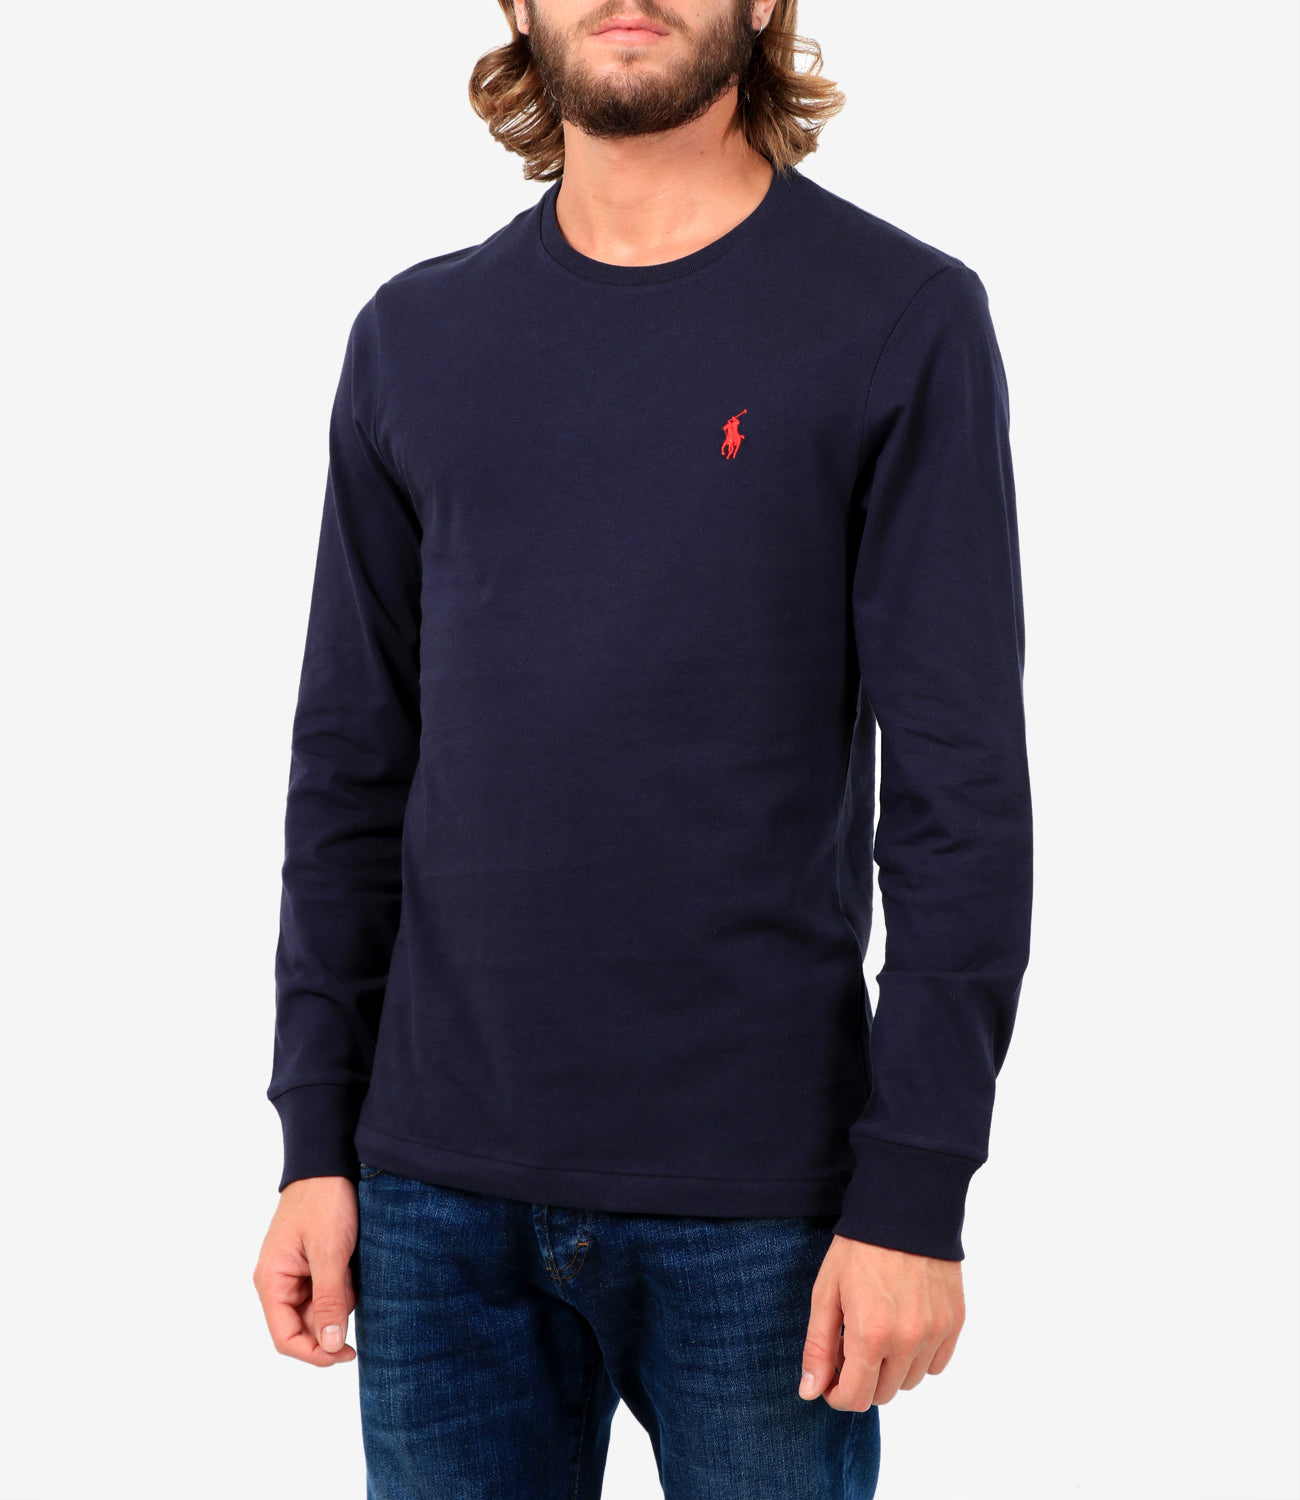 Polo Ralph Lauren | T-Shirt Blu Navy